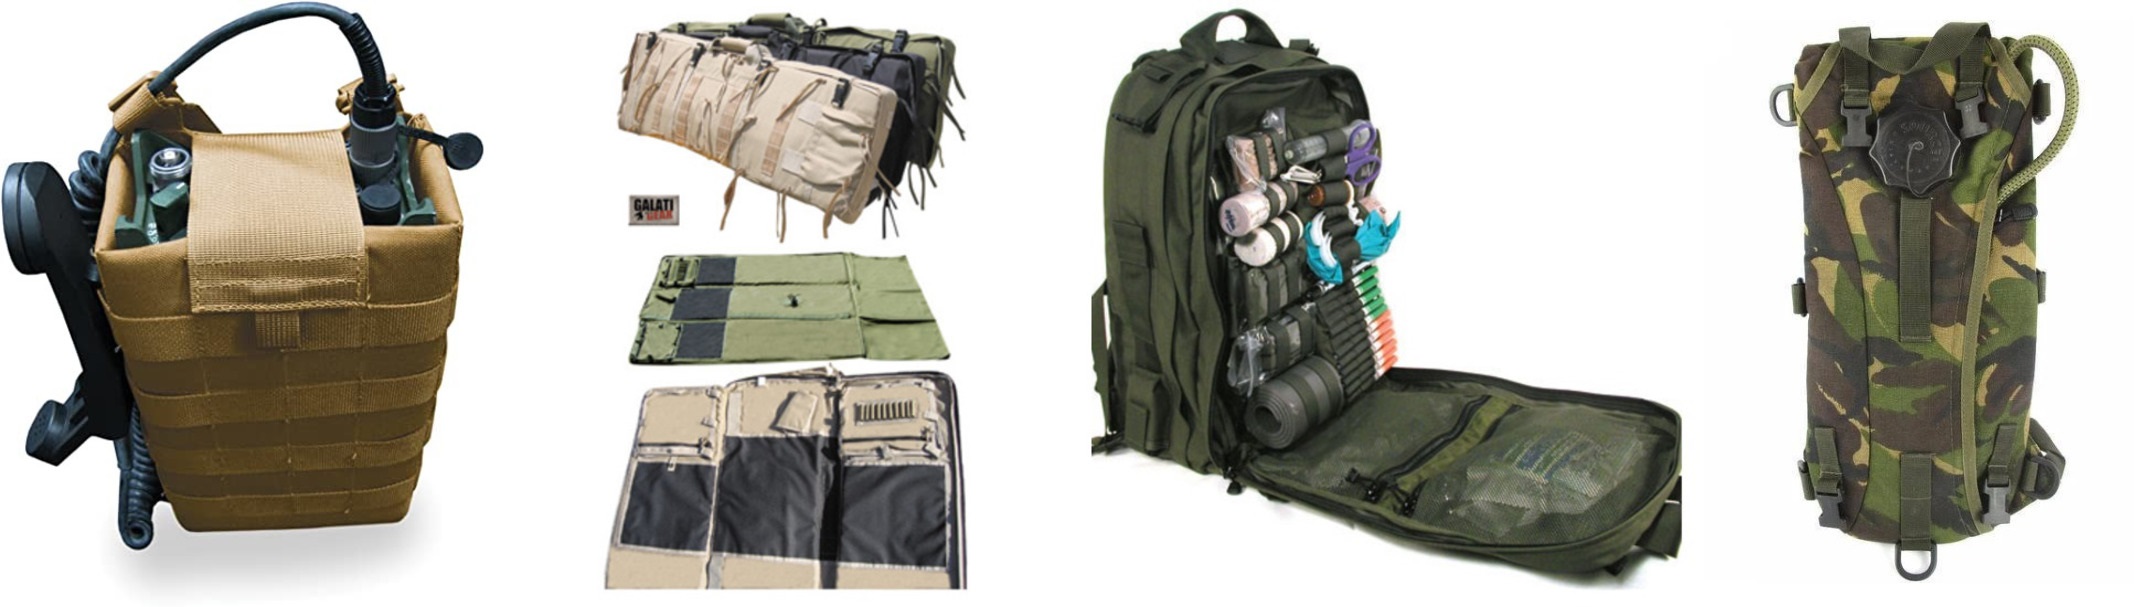 Спеціальні рюкзаки розраховані на специфіку використання окремих підрозділів чи бойовими одиницями. Рюкзак для рації, снайперів, медиків, питної системи типу CamelBak